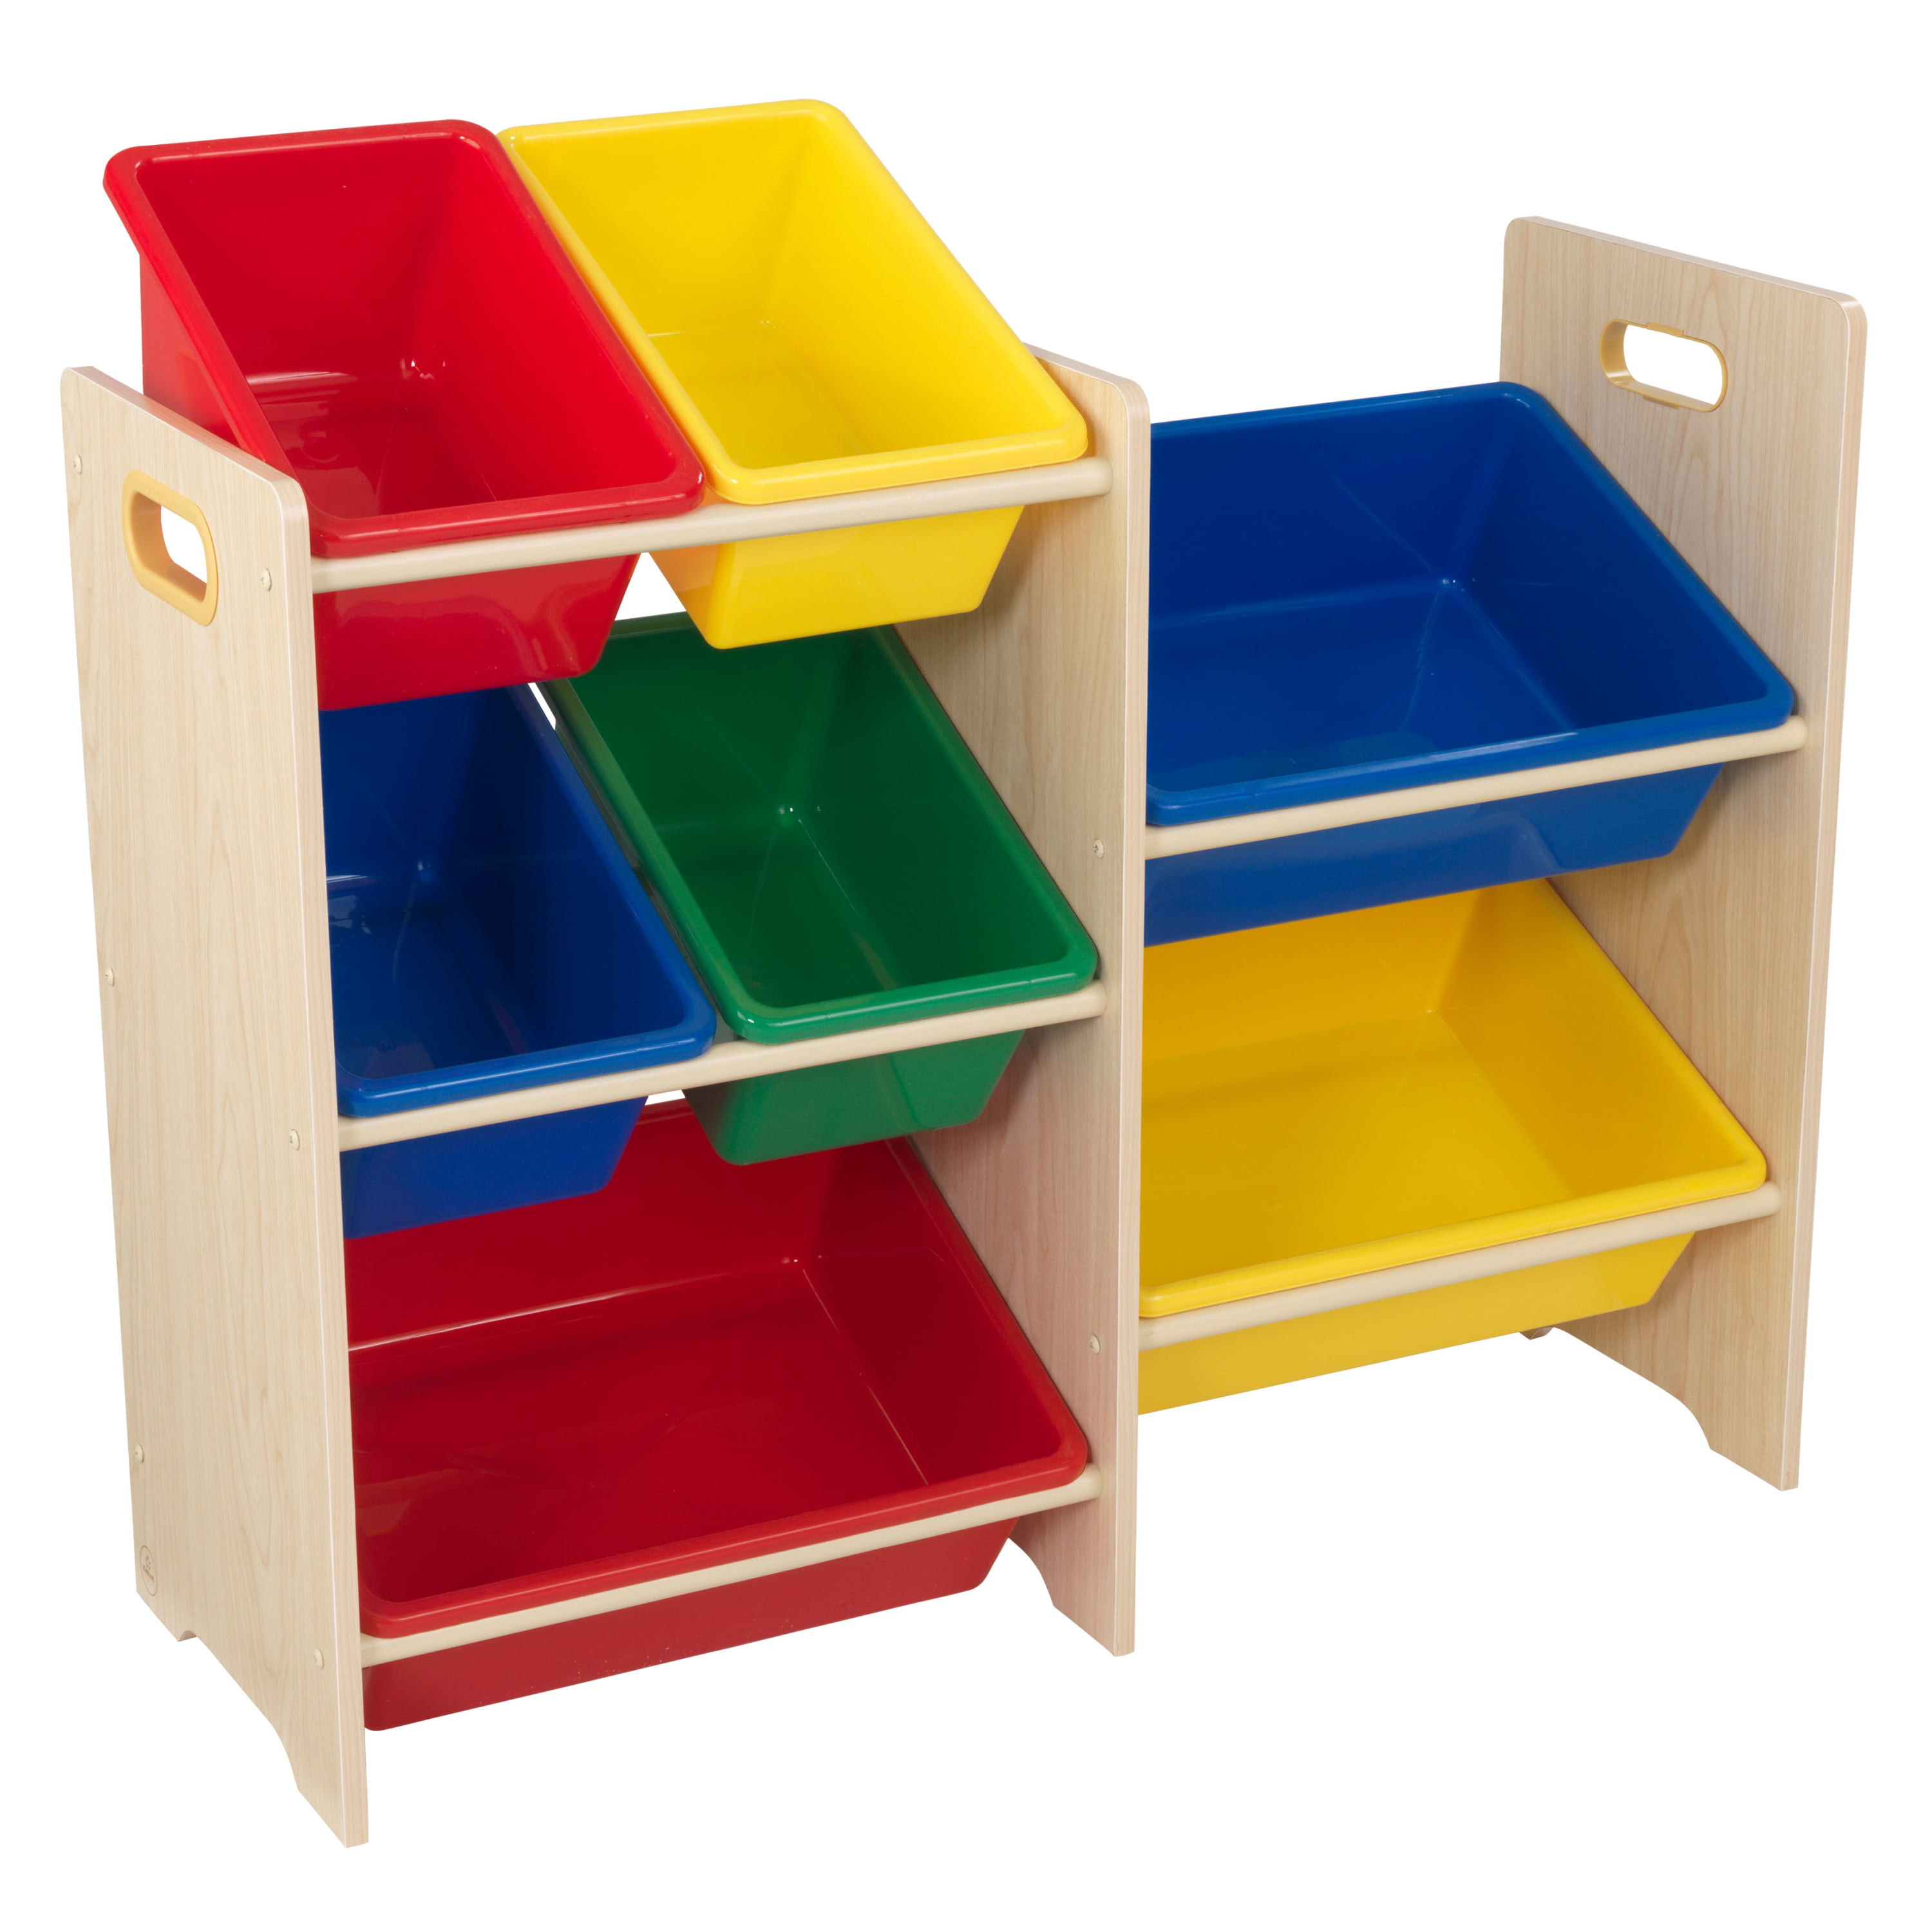 Wooden toy storage bins